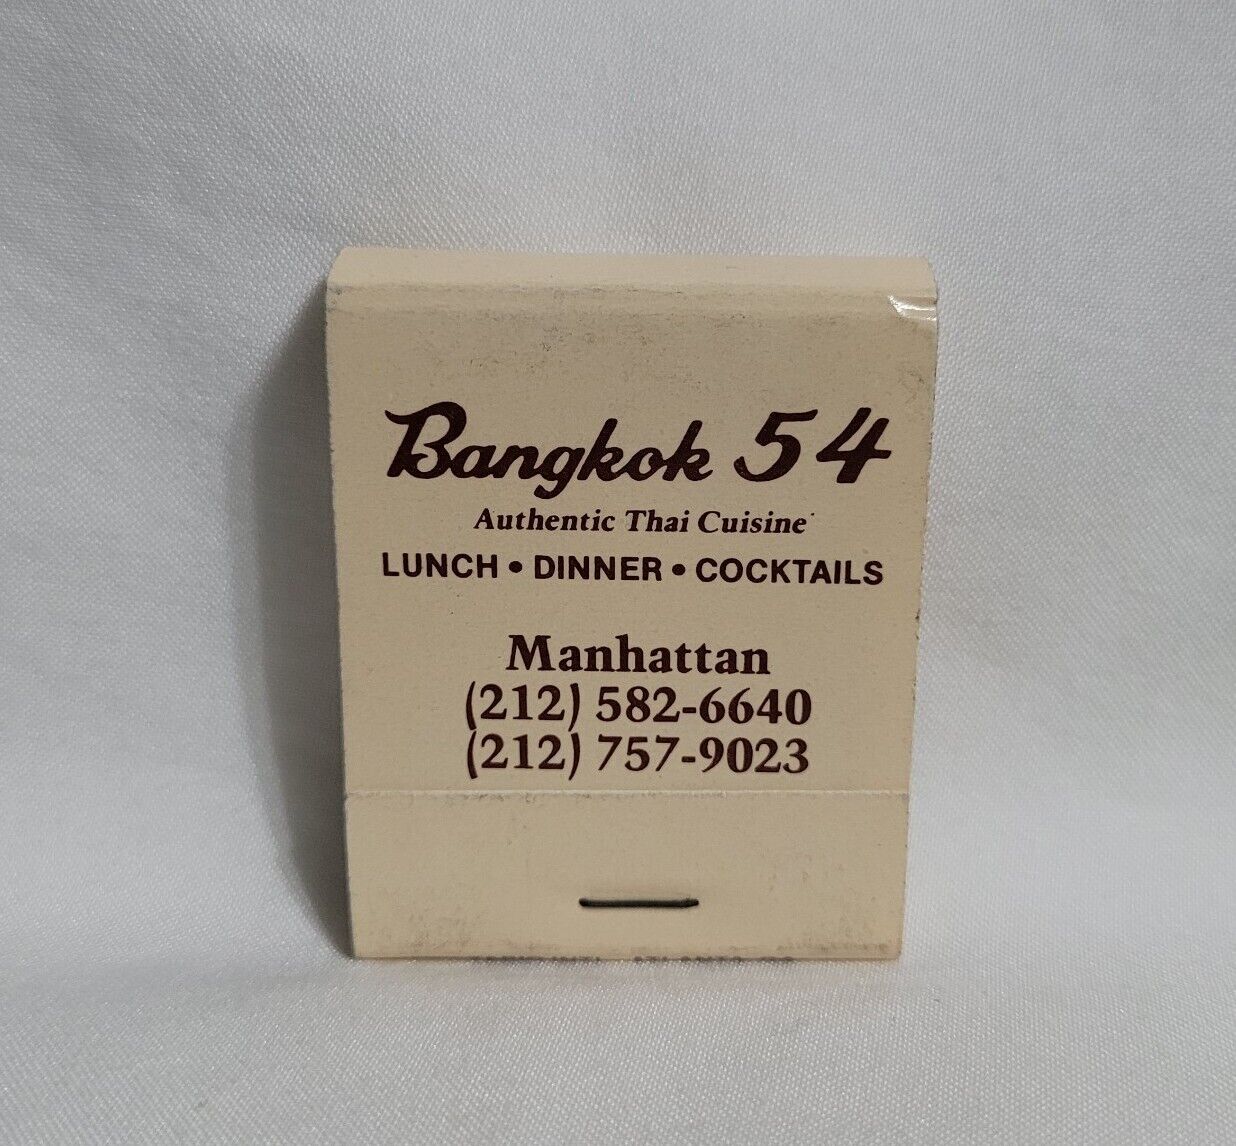 Vintage Bangkok 54 Thai Food Restaurant Matchbook New York City Advertising Full